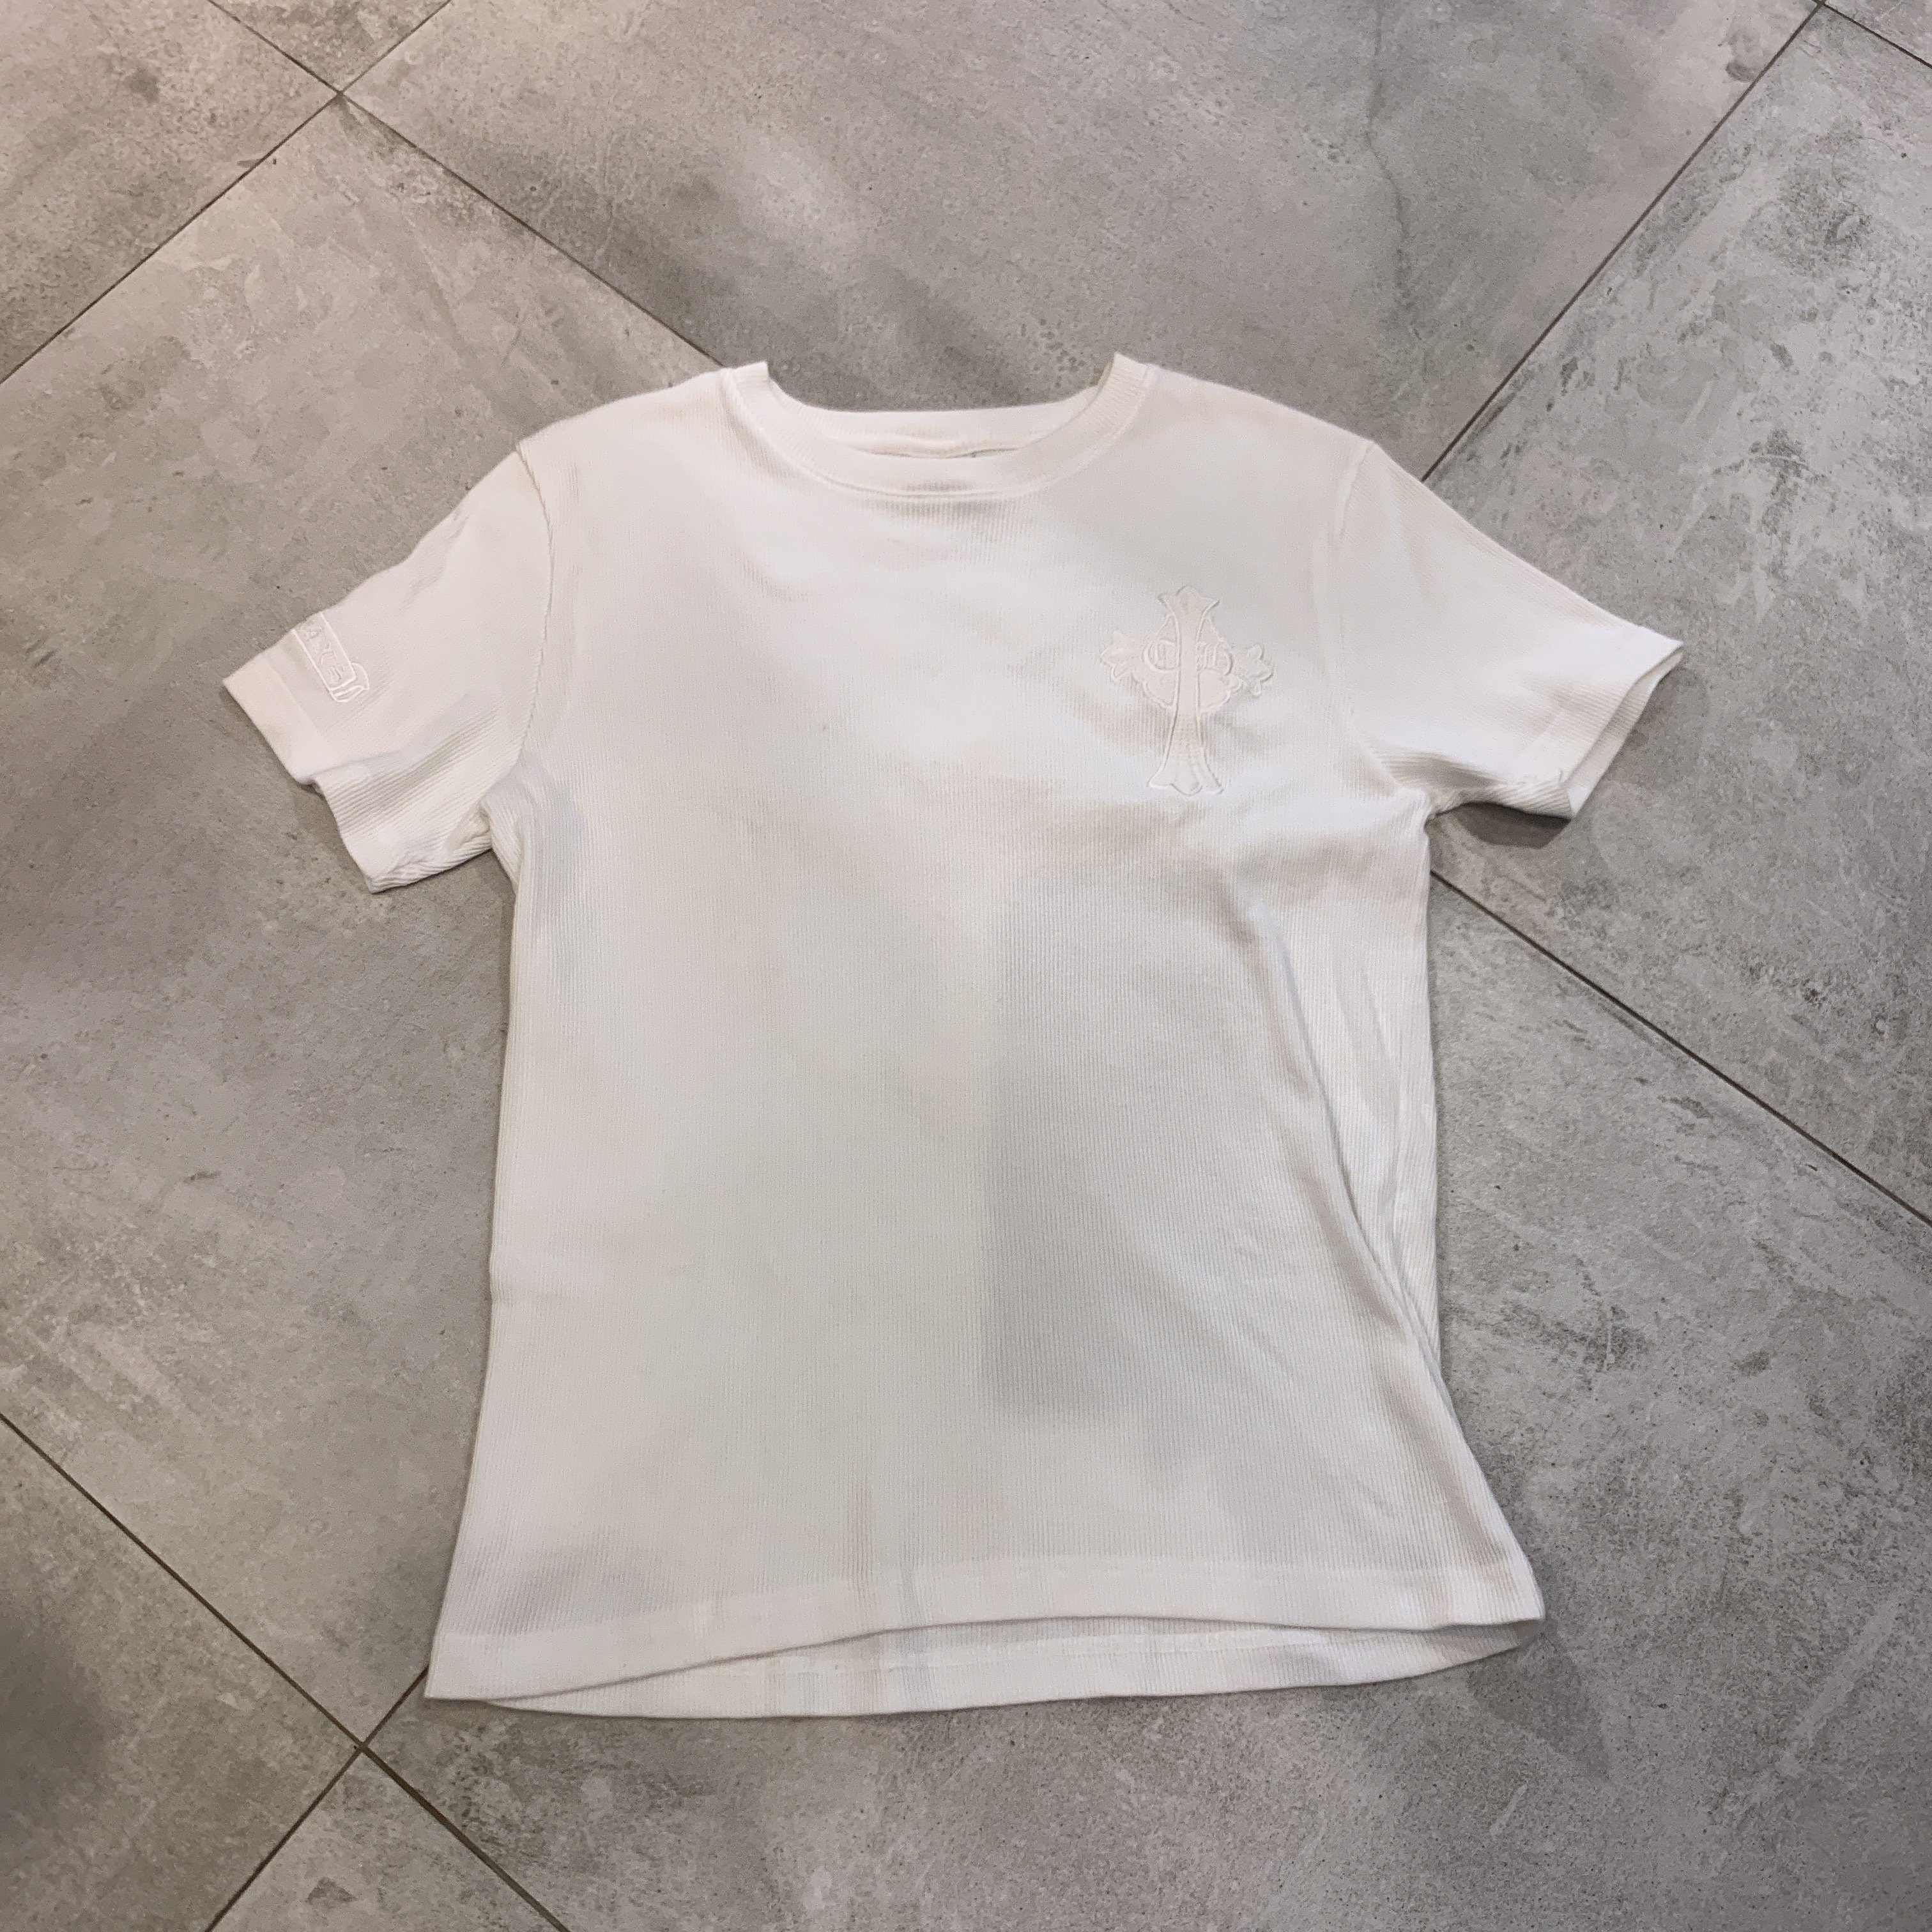 專櫃正品 限定版 Chrome Hearts   白色短袖棉T恤 ( M)